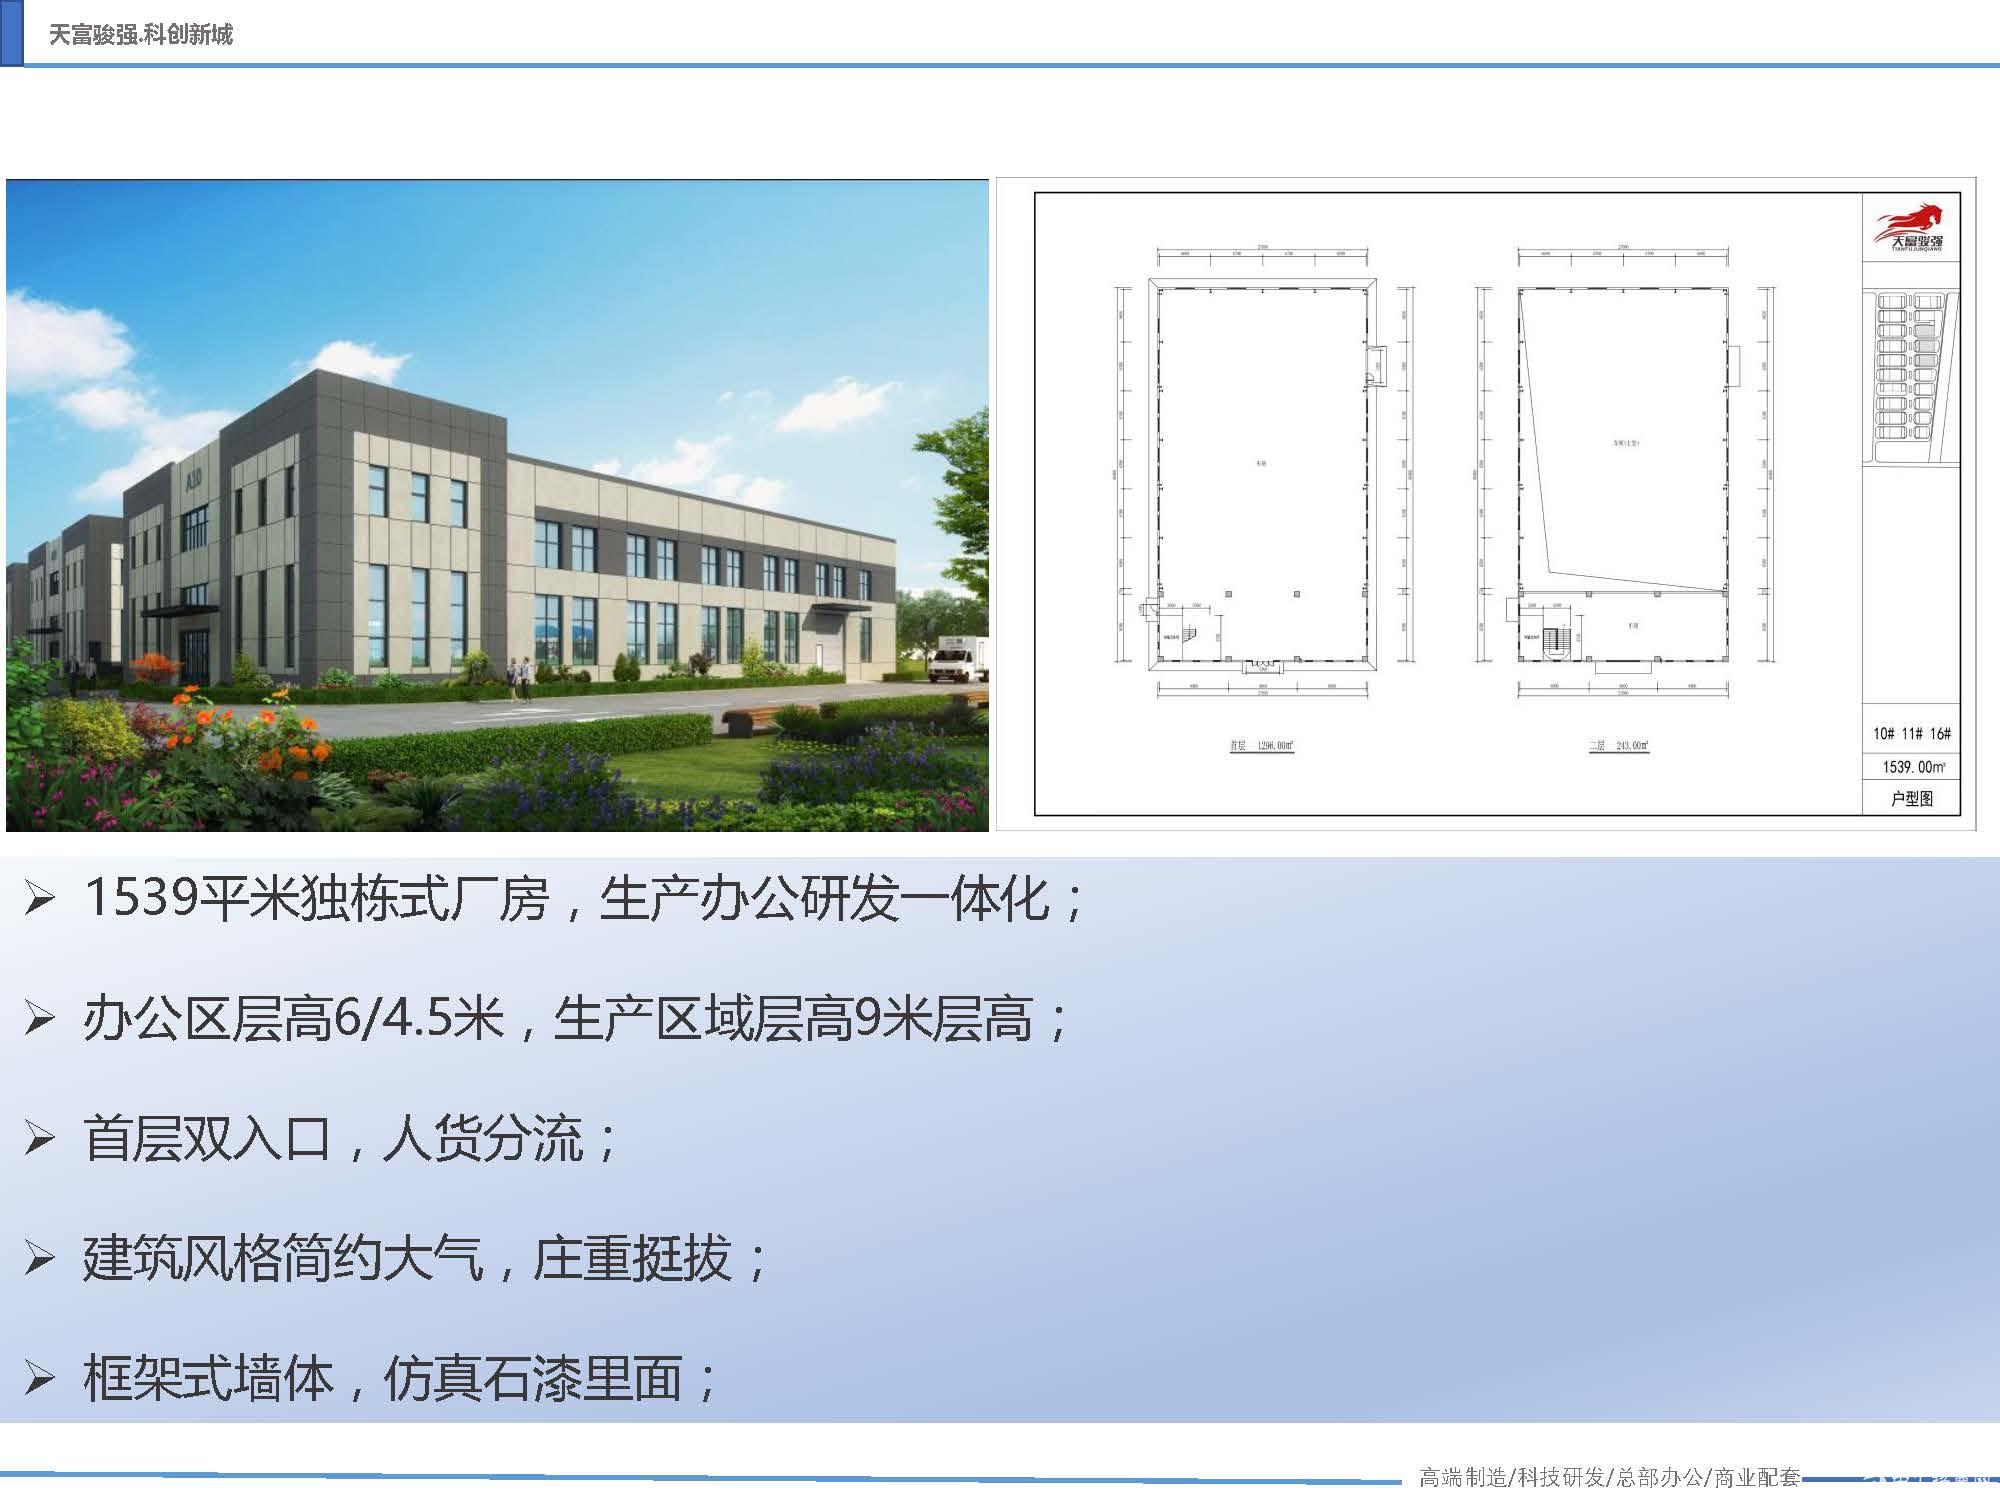 天津滨海新区工业园标准单层厂房 高9.3米-图3